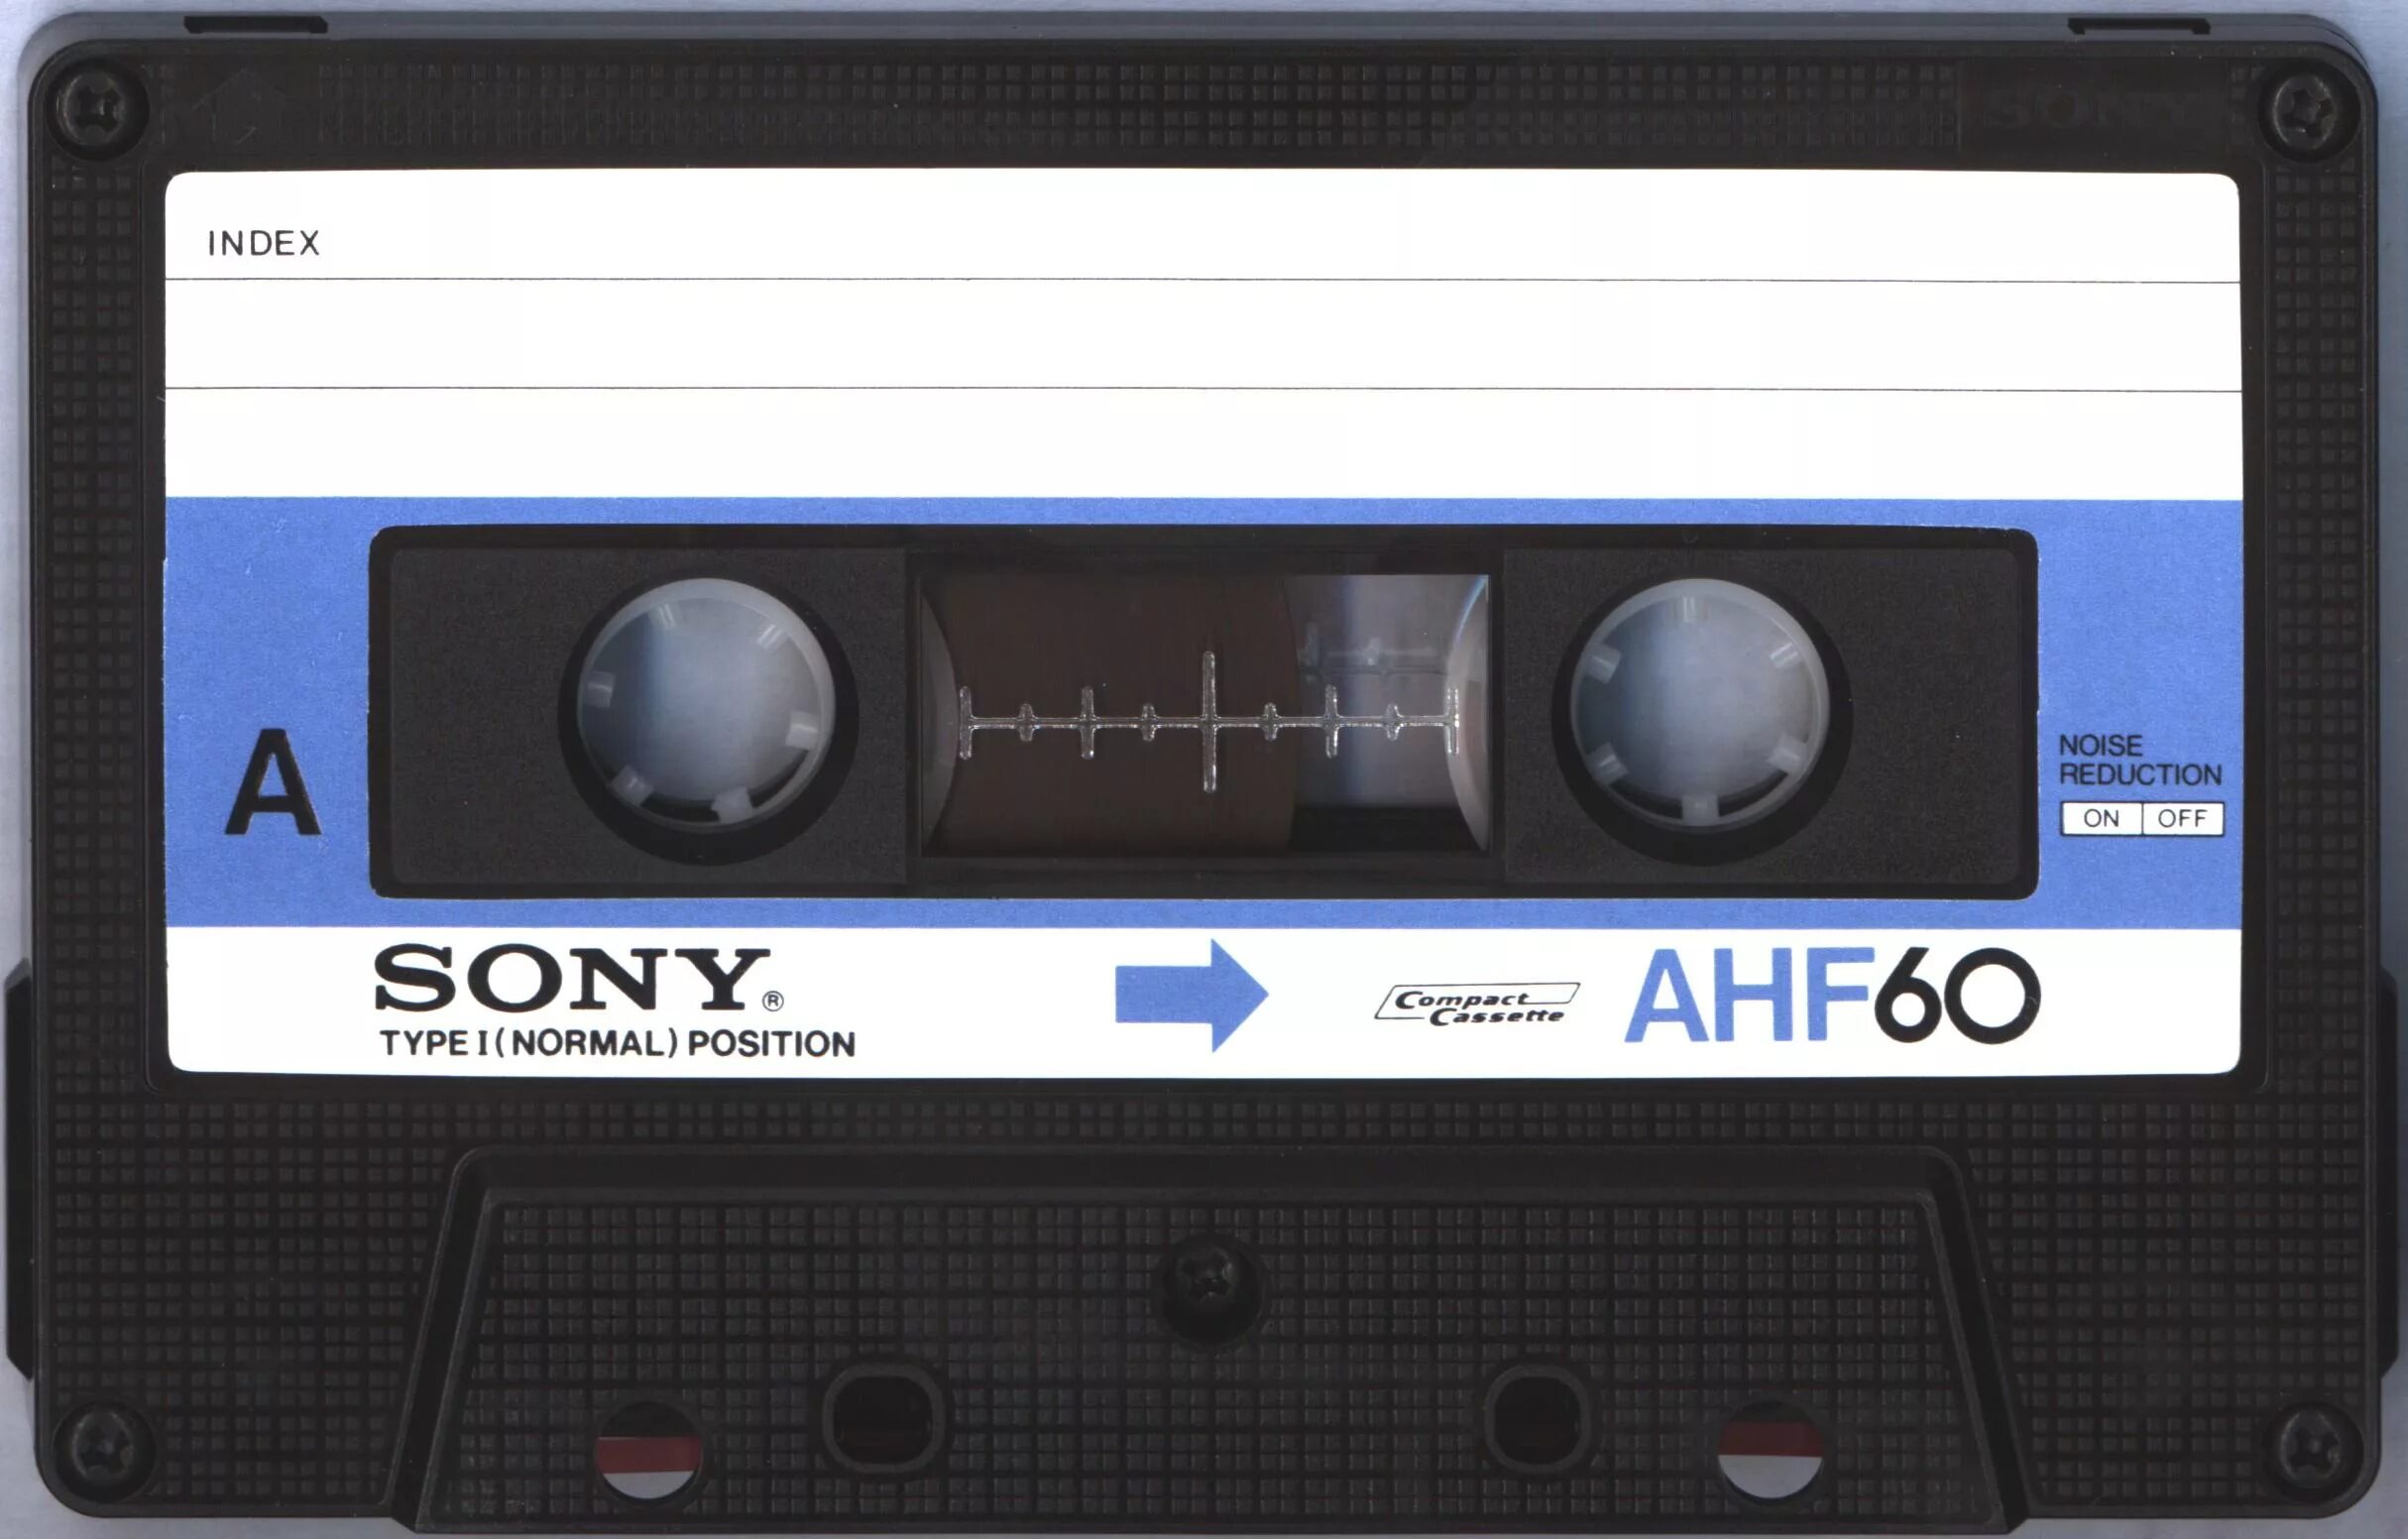 Программы кассет. Аудиокассета Sony AHF 1978. Компакт кассета Sony. Кассета Sony BHF 46. Кассета сони для магнитофона.